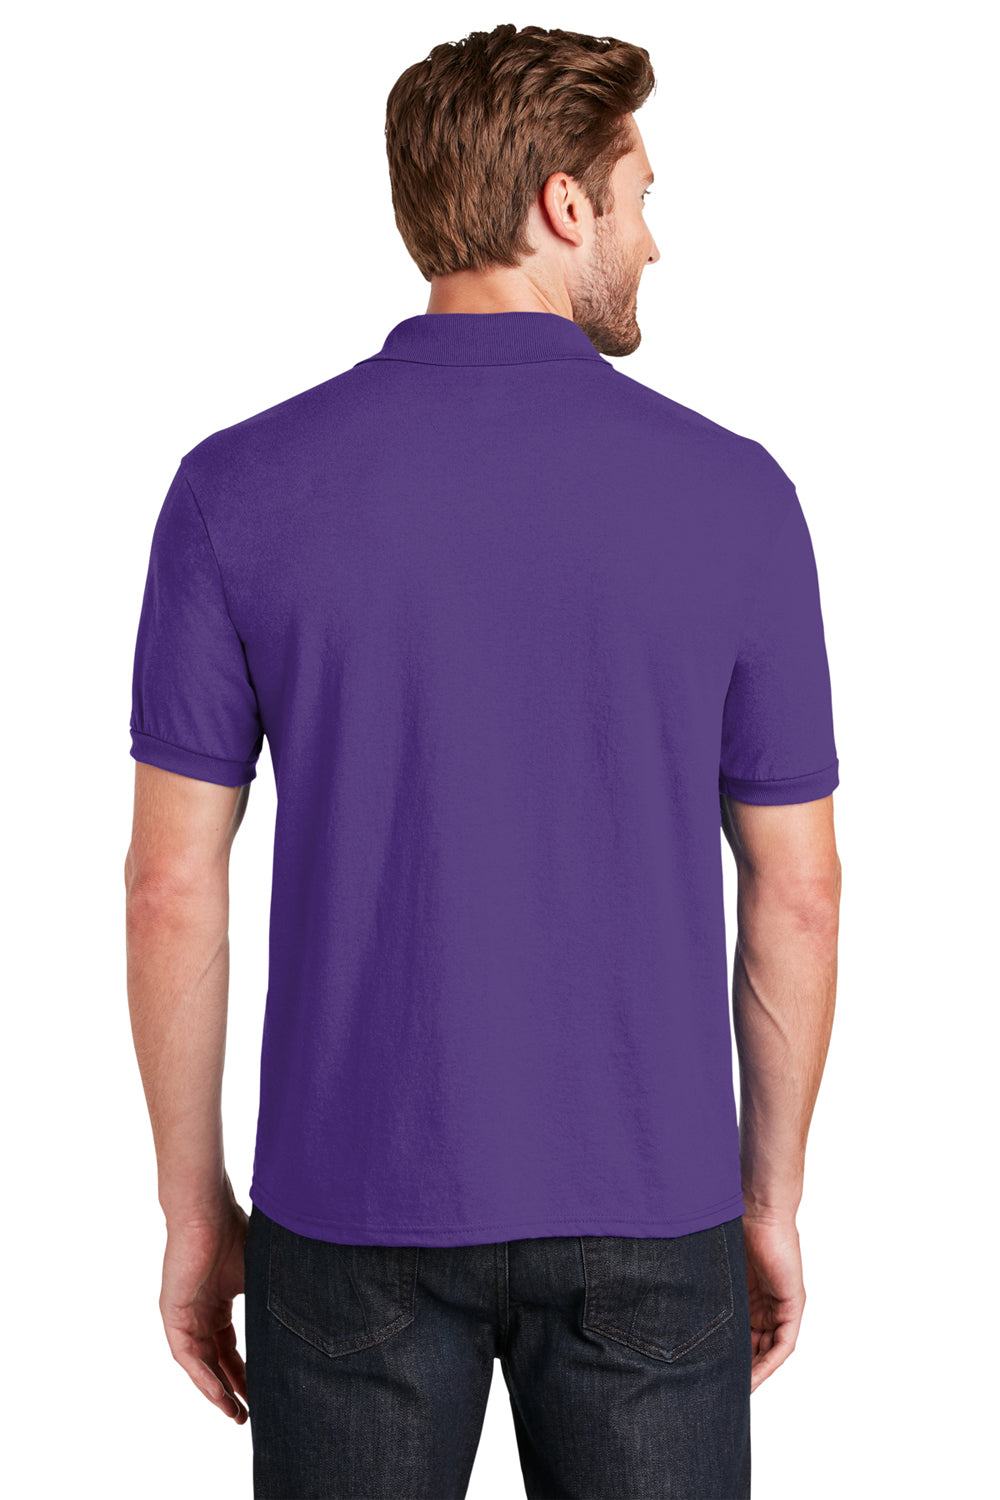 Hanes 054X/054 Mens EcoSmart Short Sleeve Polo Shirt Purple Back